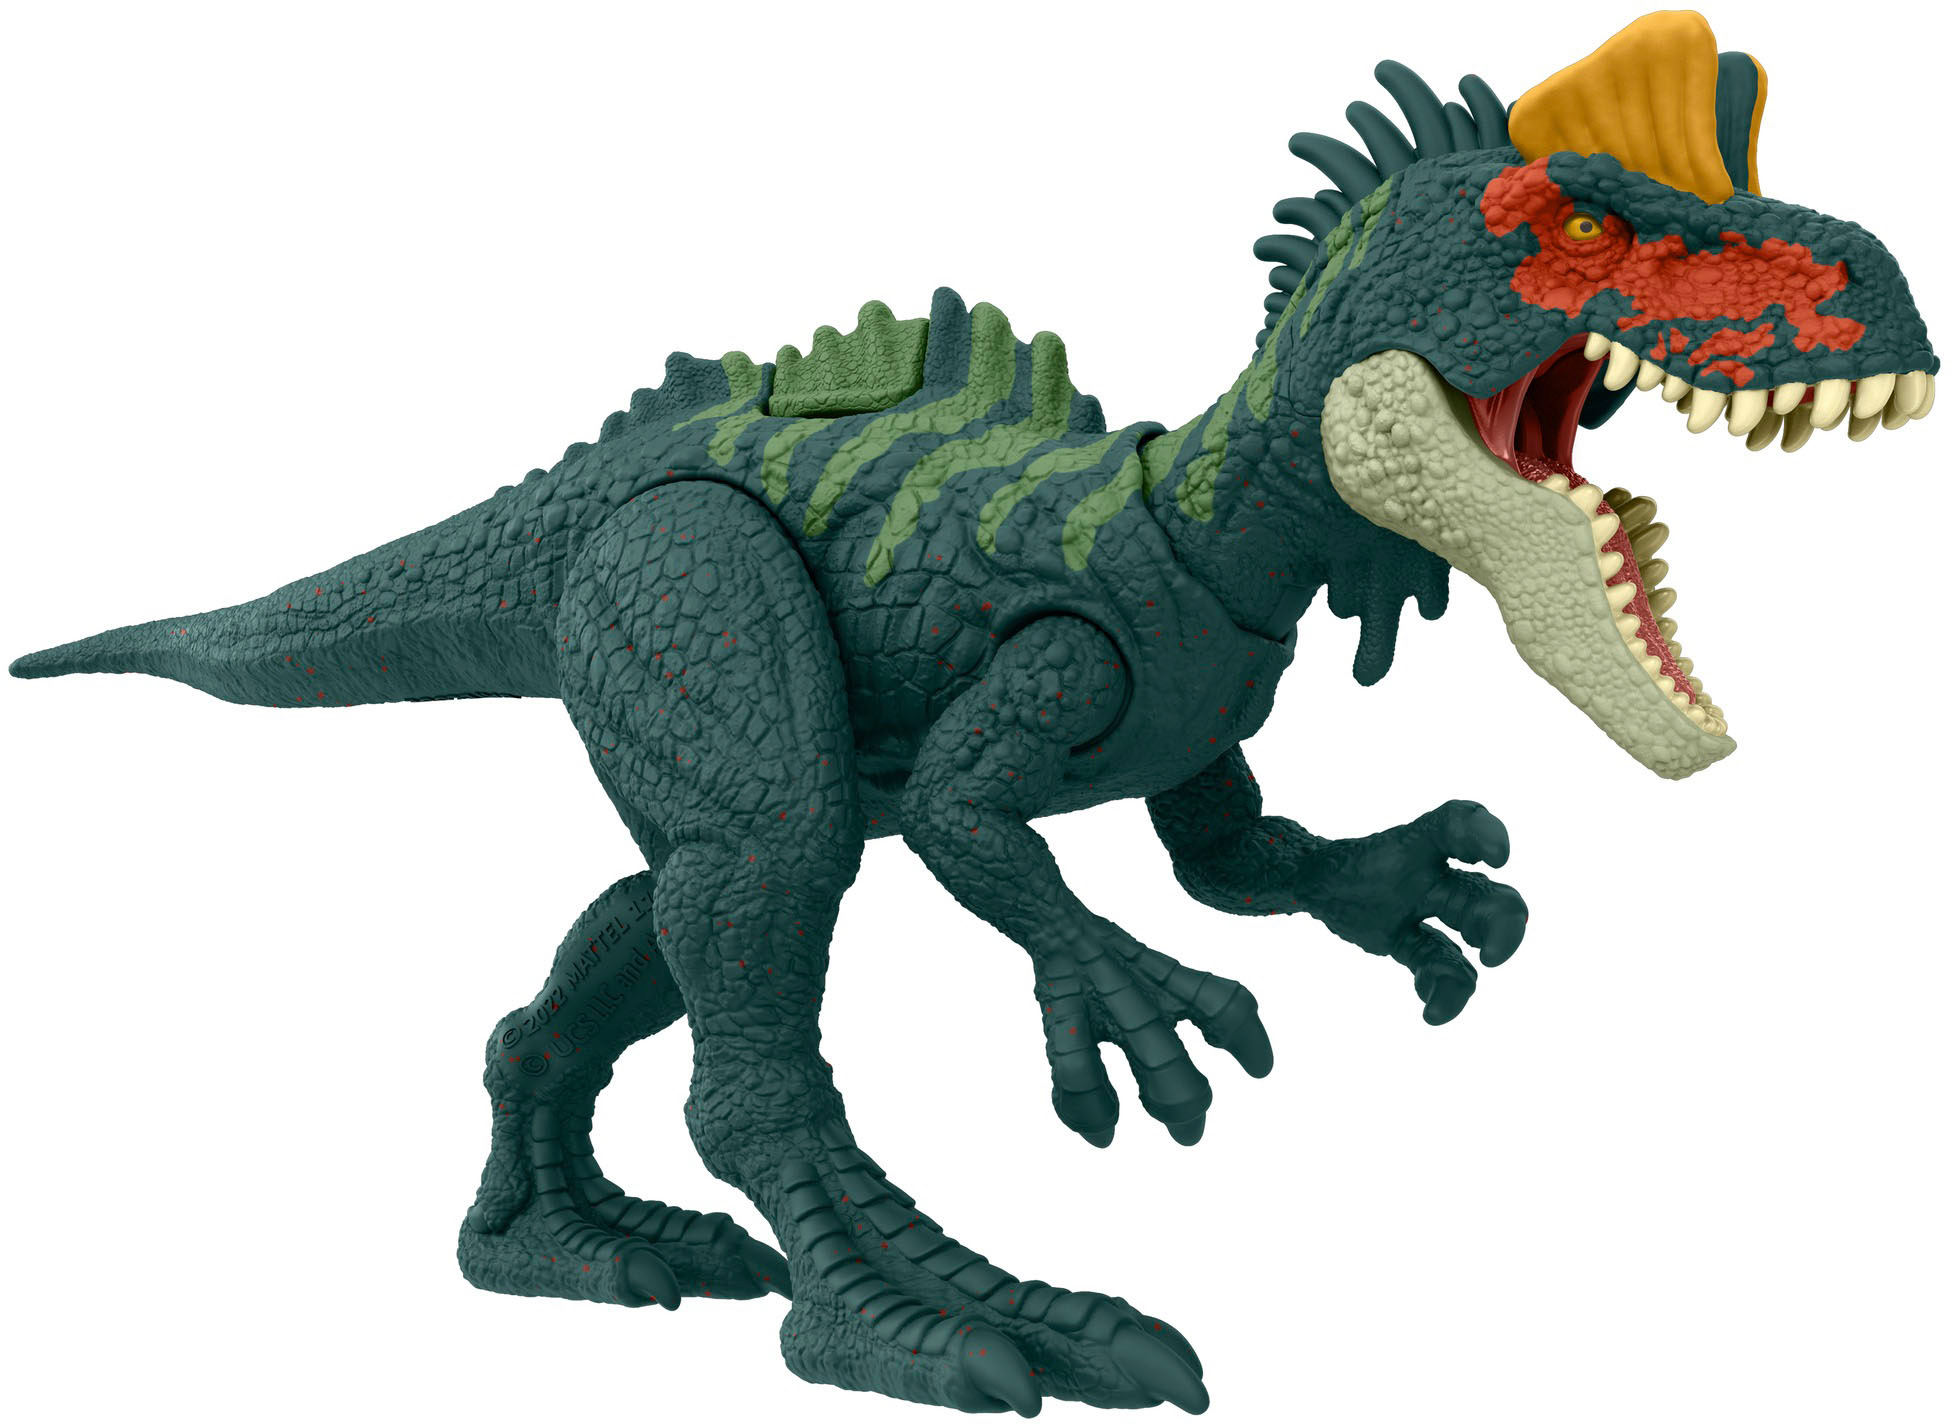 HLN49 Danger Figure Pack - Best Dinosaur Vary Buy World Jurassic Action May Styles